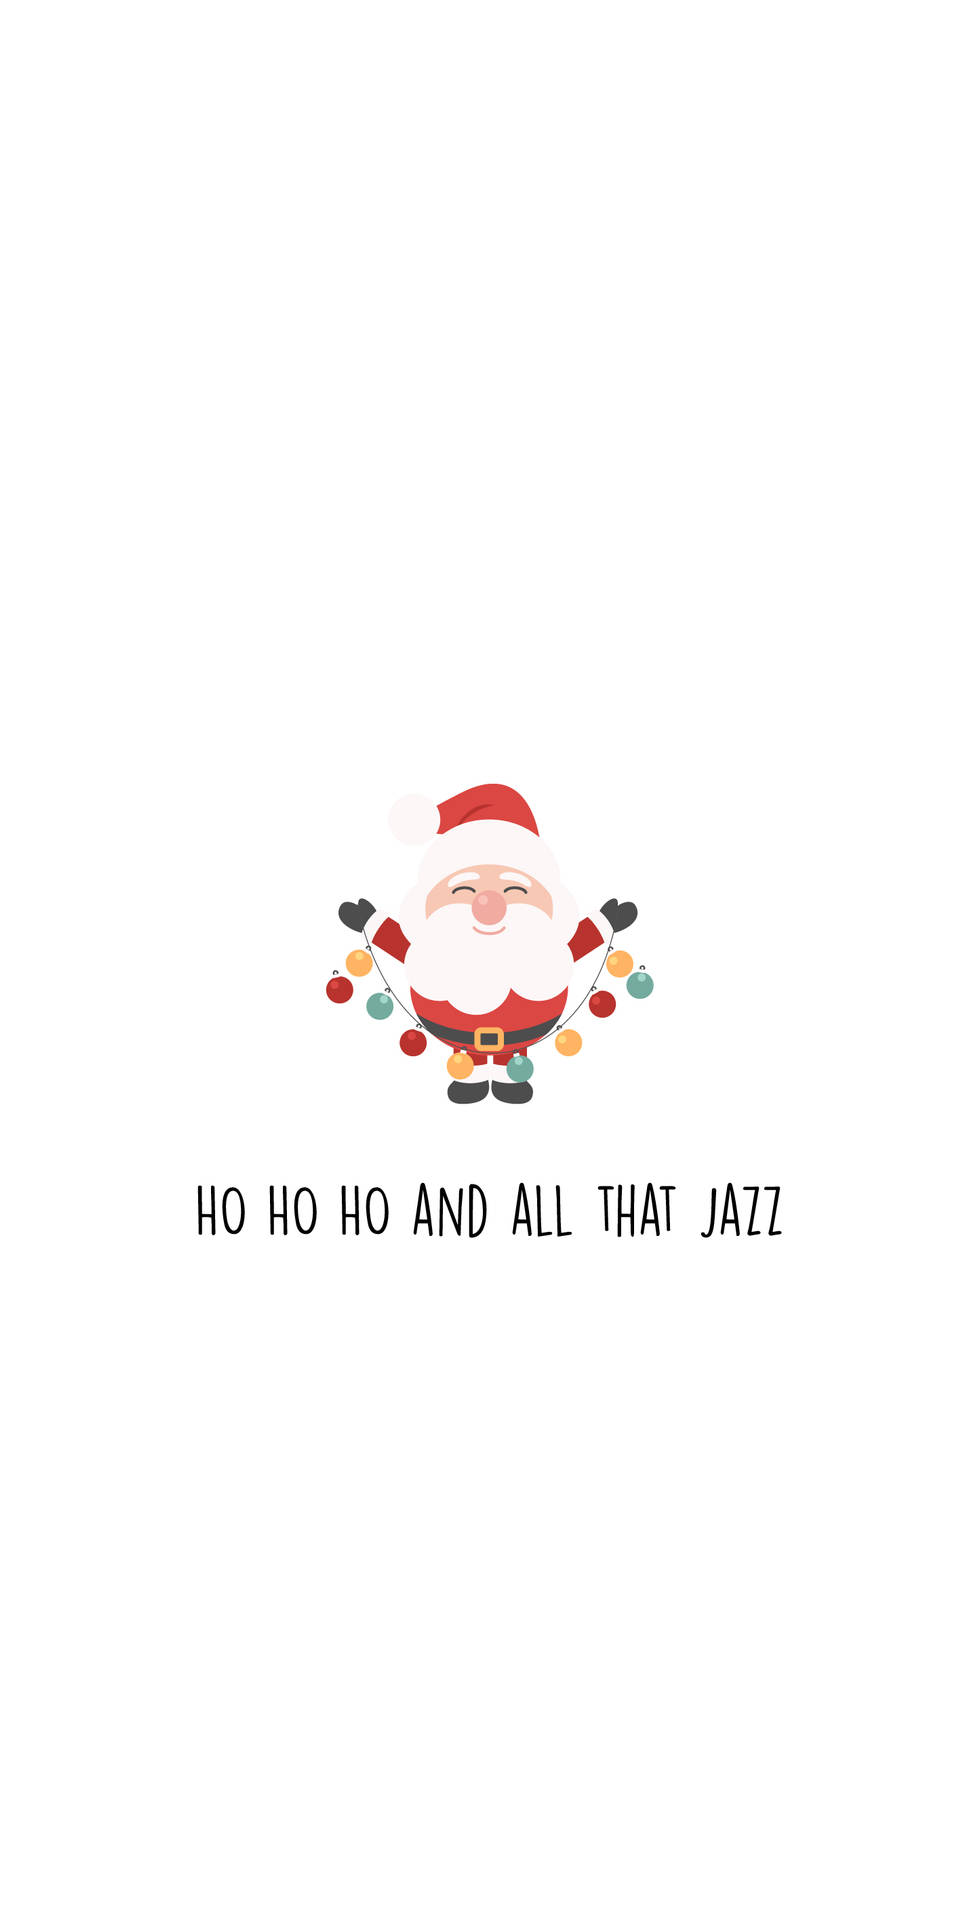 Ho ho ho and all that jazz - Cute Christmas